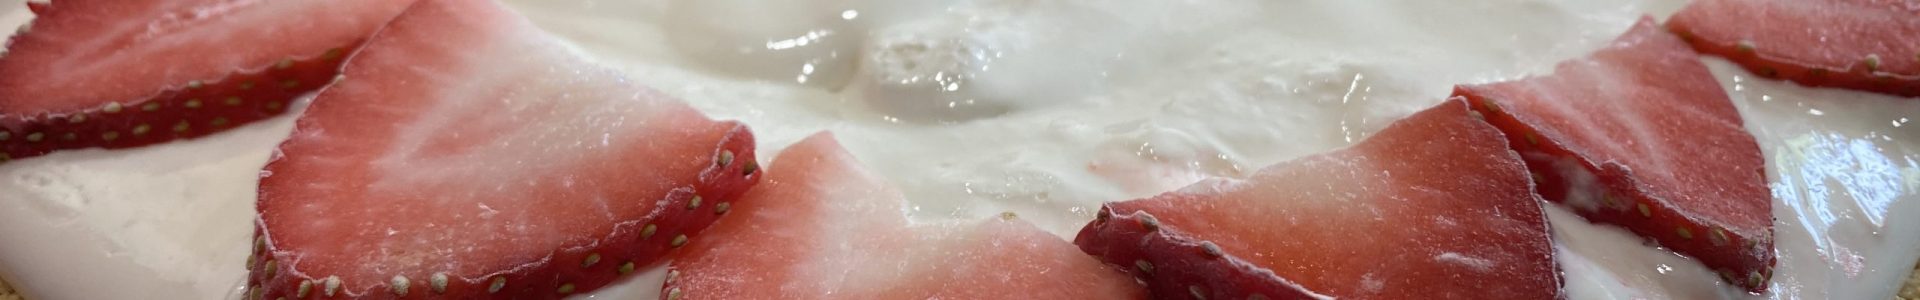 Frozen Strawberry Lemonade Pie